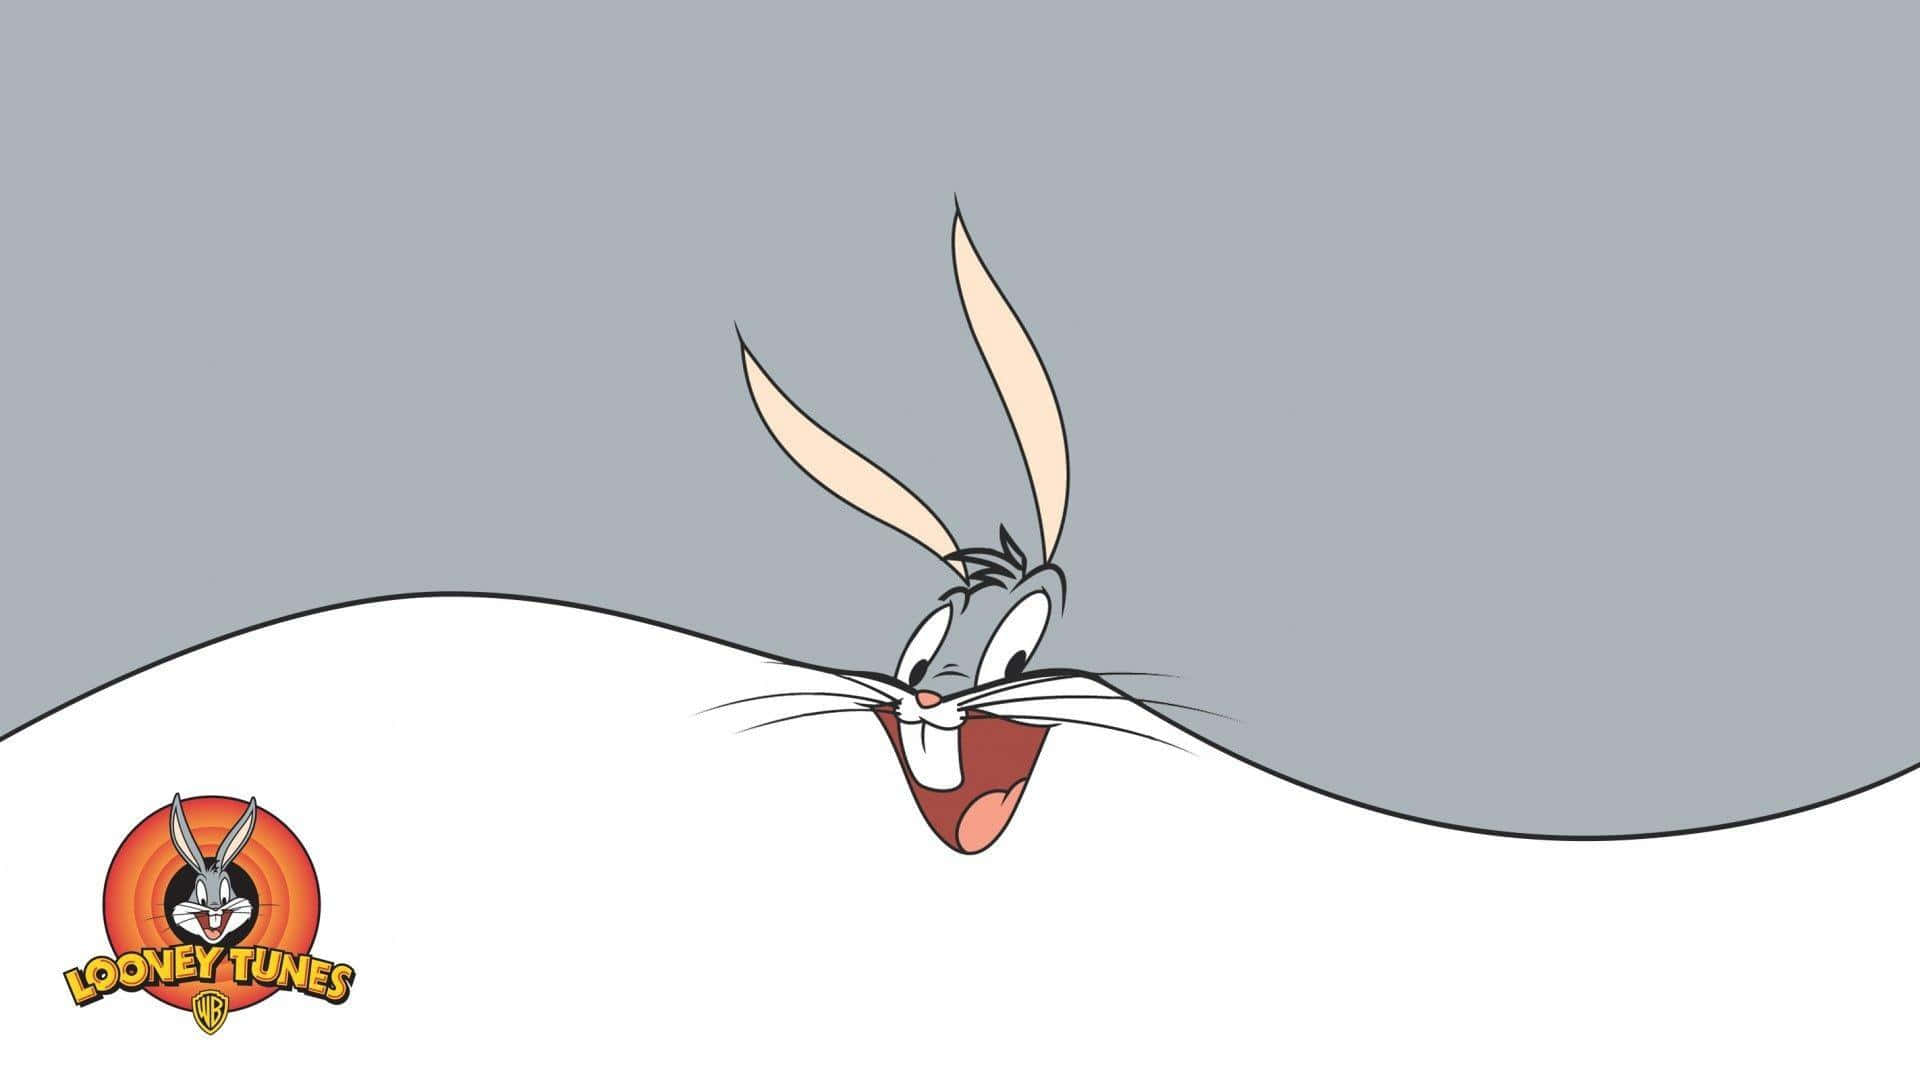 Ilconiglio Preferito Di Tutti - Bugs Bunny!